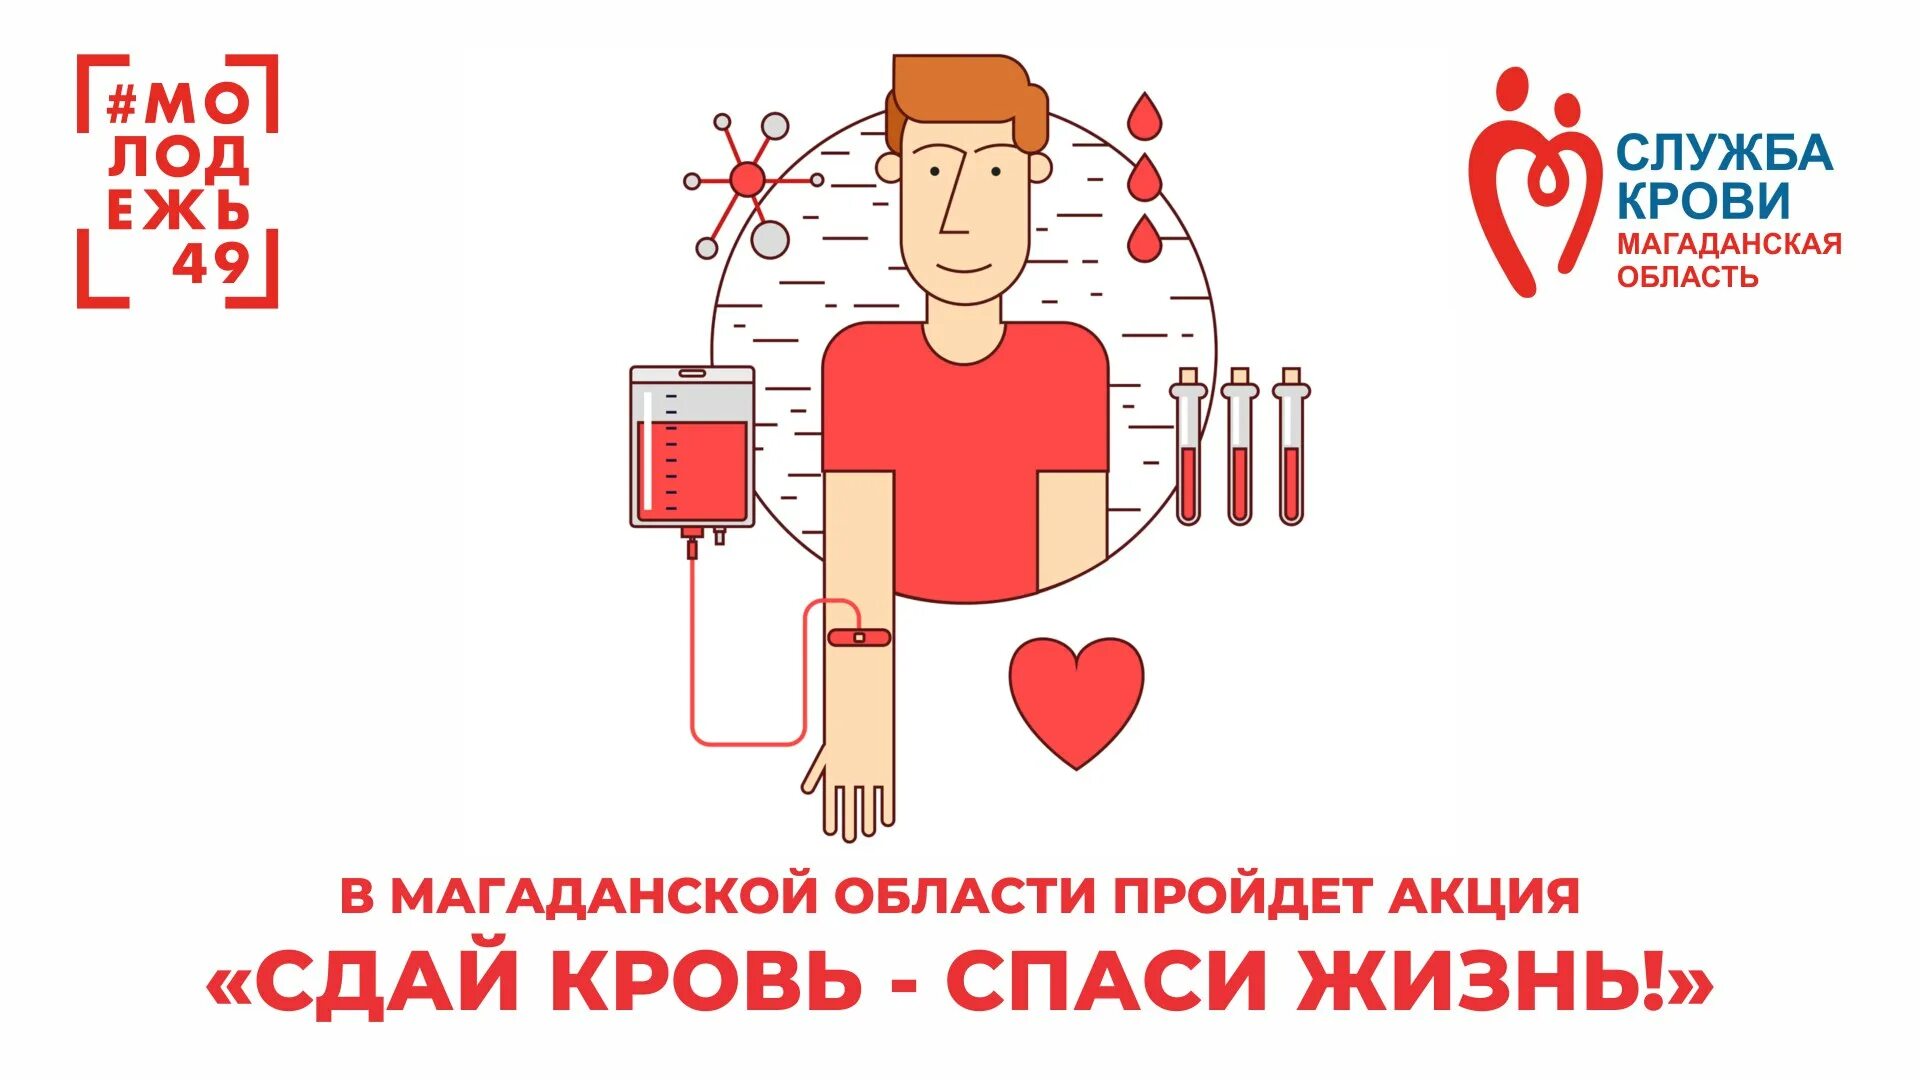 Всемирный день донора крови. Сдай кровь Спаси жизнь. Акция Сдай кровь Спаси жизнь. Донор крови донор жизни. Мама дениса решила сдать кровь